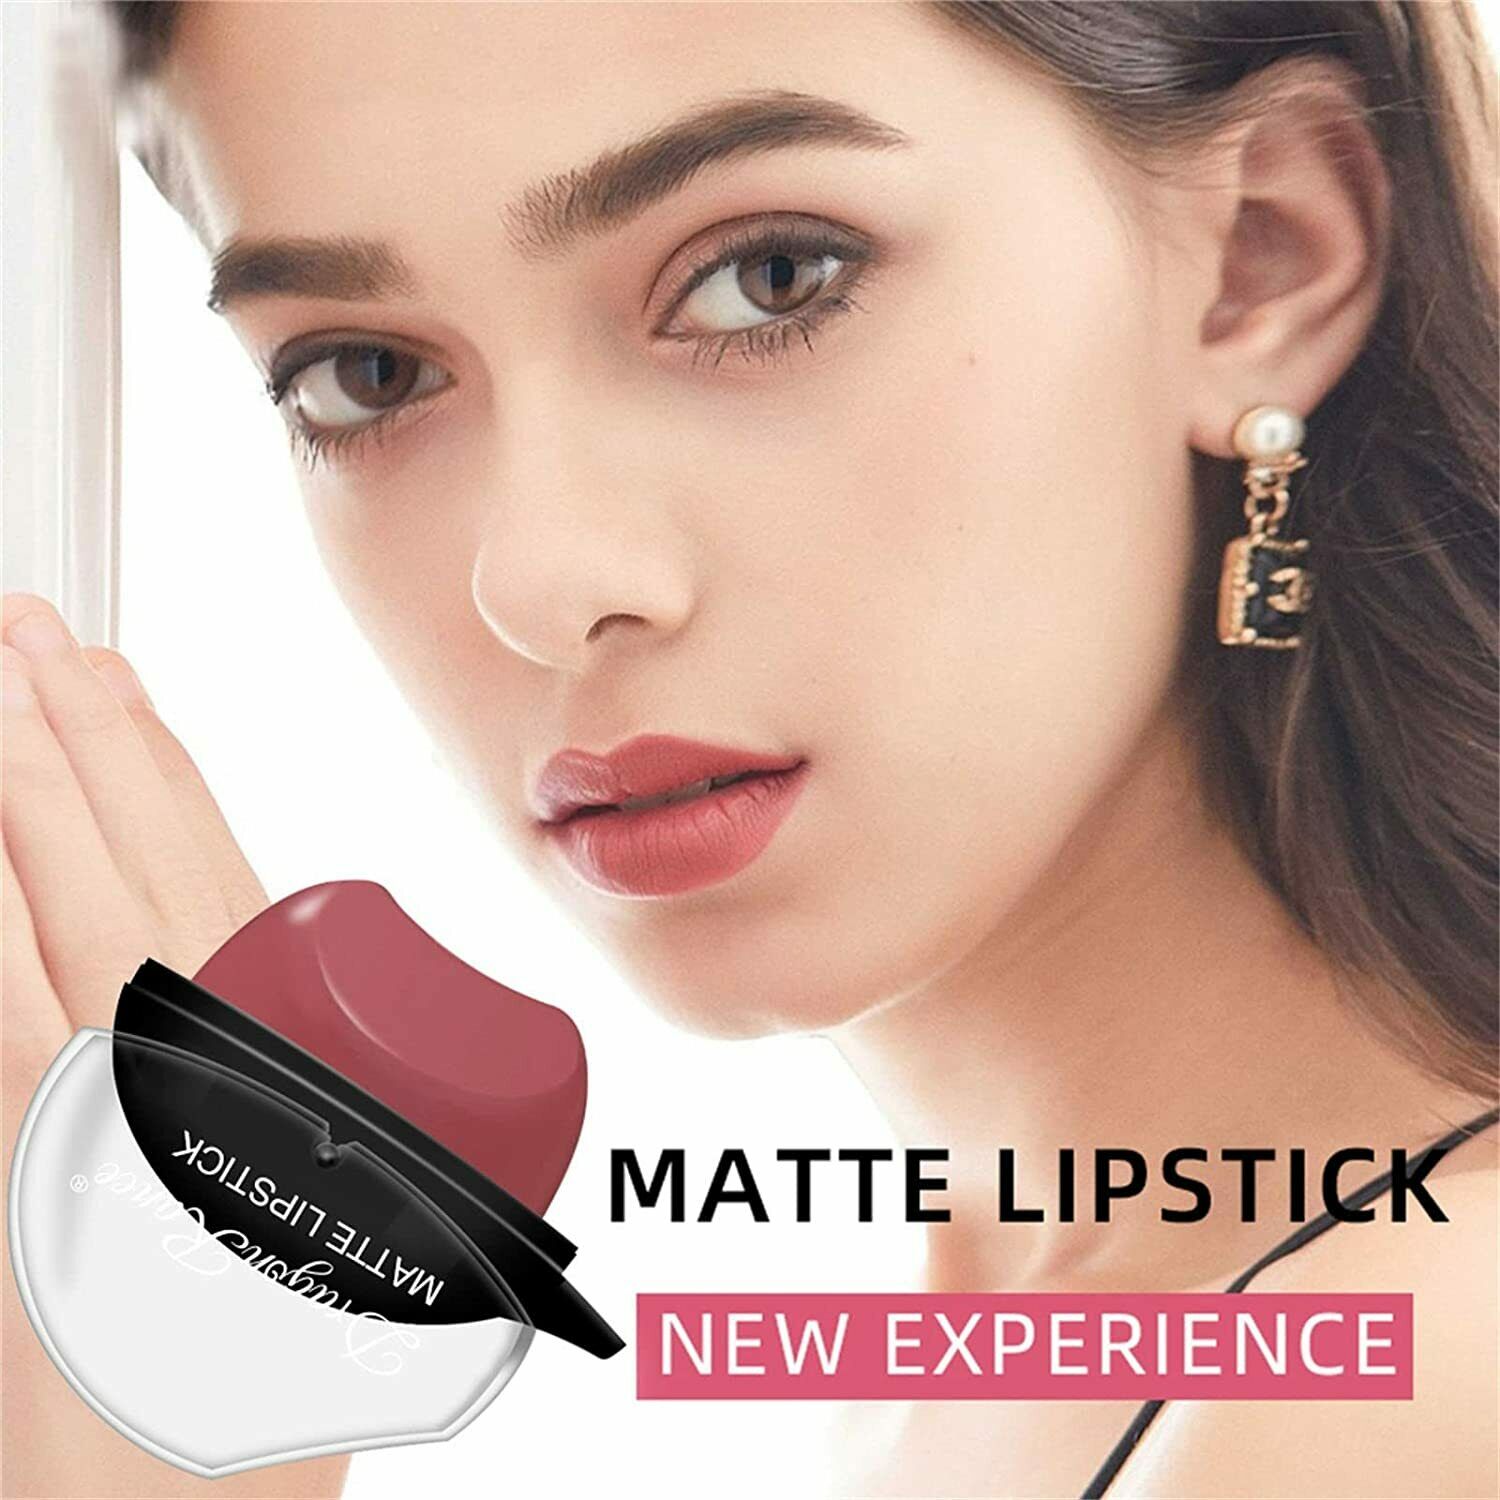 Lazy Lapstick Girls Makeup Matte imperme￡vel ￠ prova d'￡gua Longa de copo Lip Gloss f￡cil de usar comestics femininos femininos